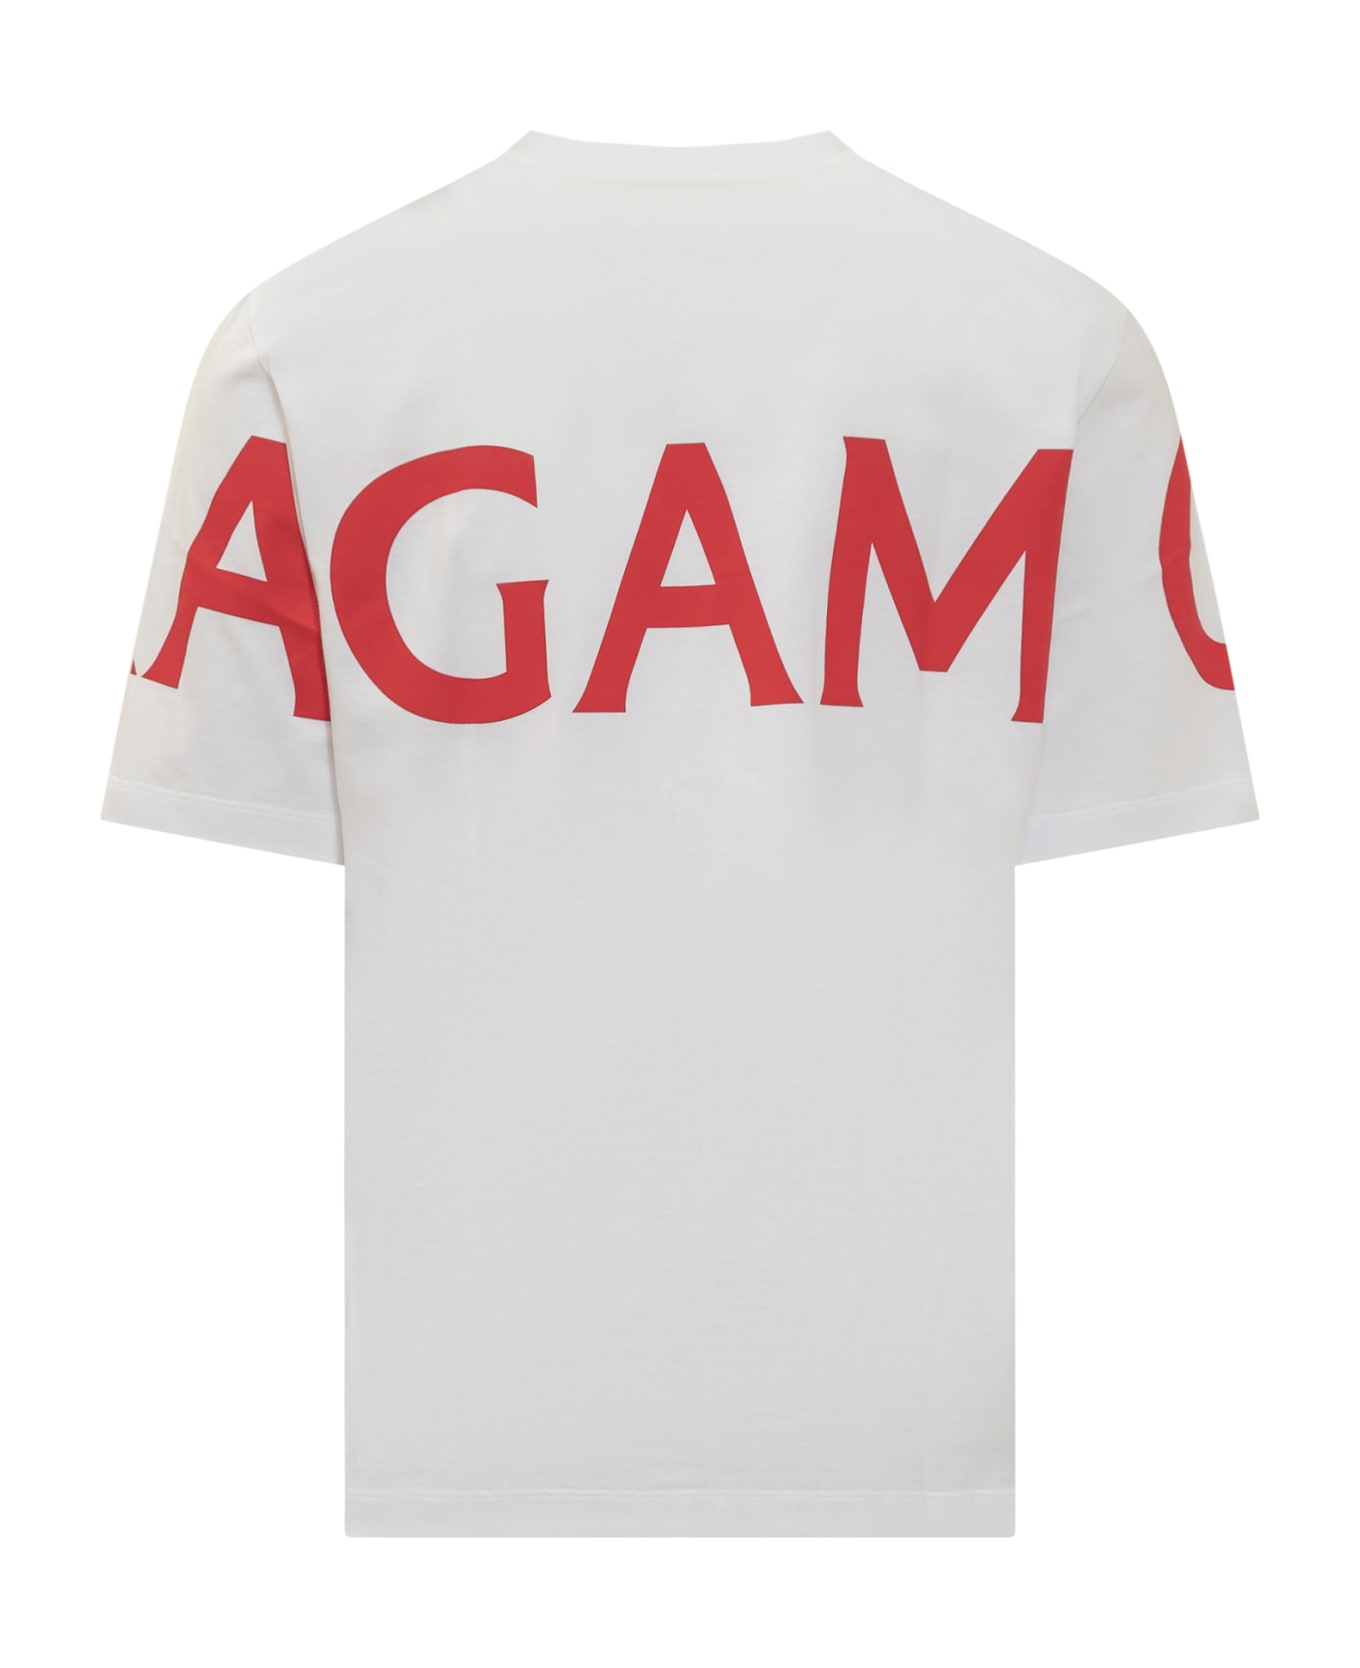 Ferragamo Manifesto T-shirt - WHITE/NEW RED